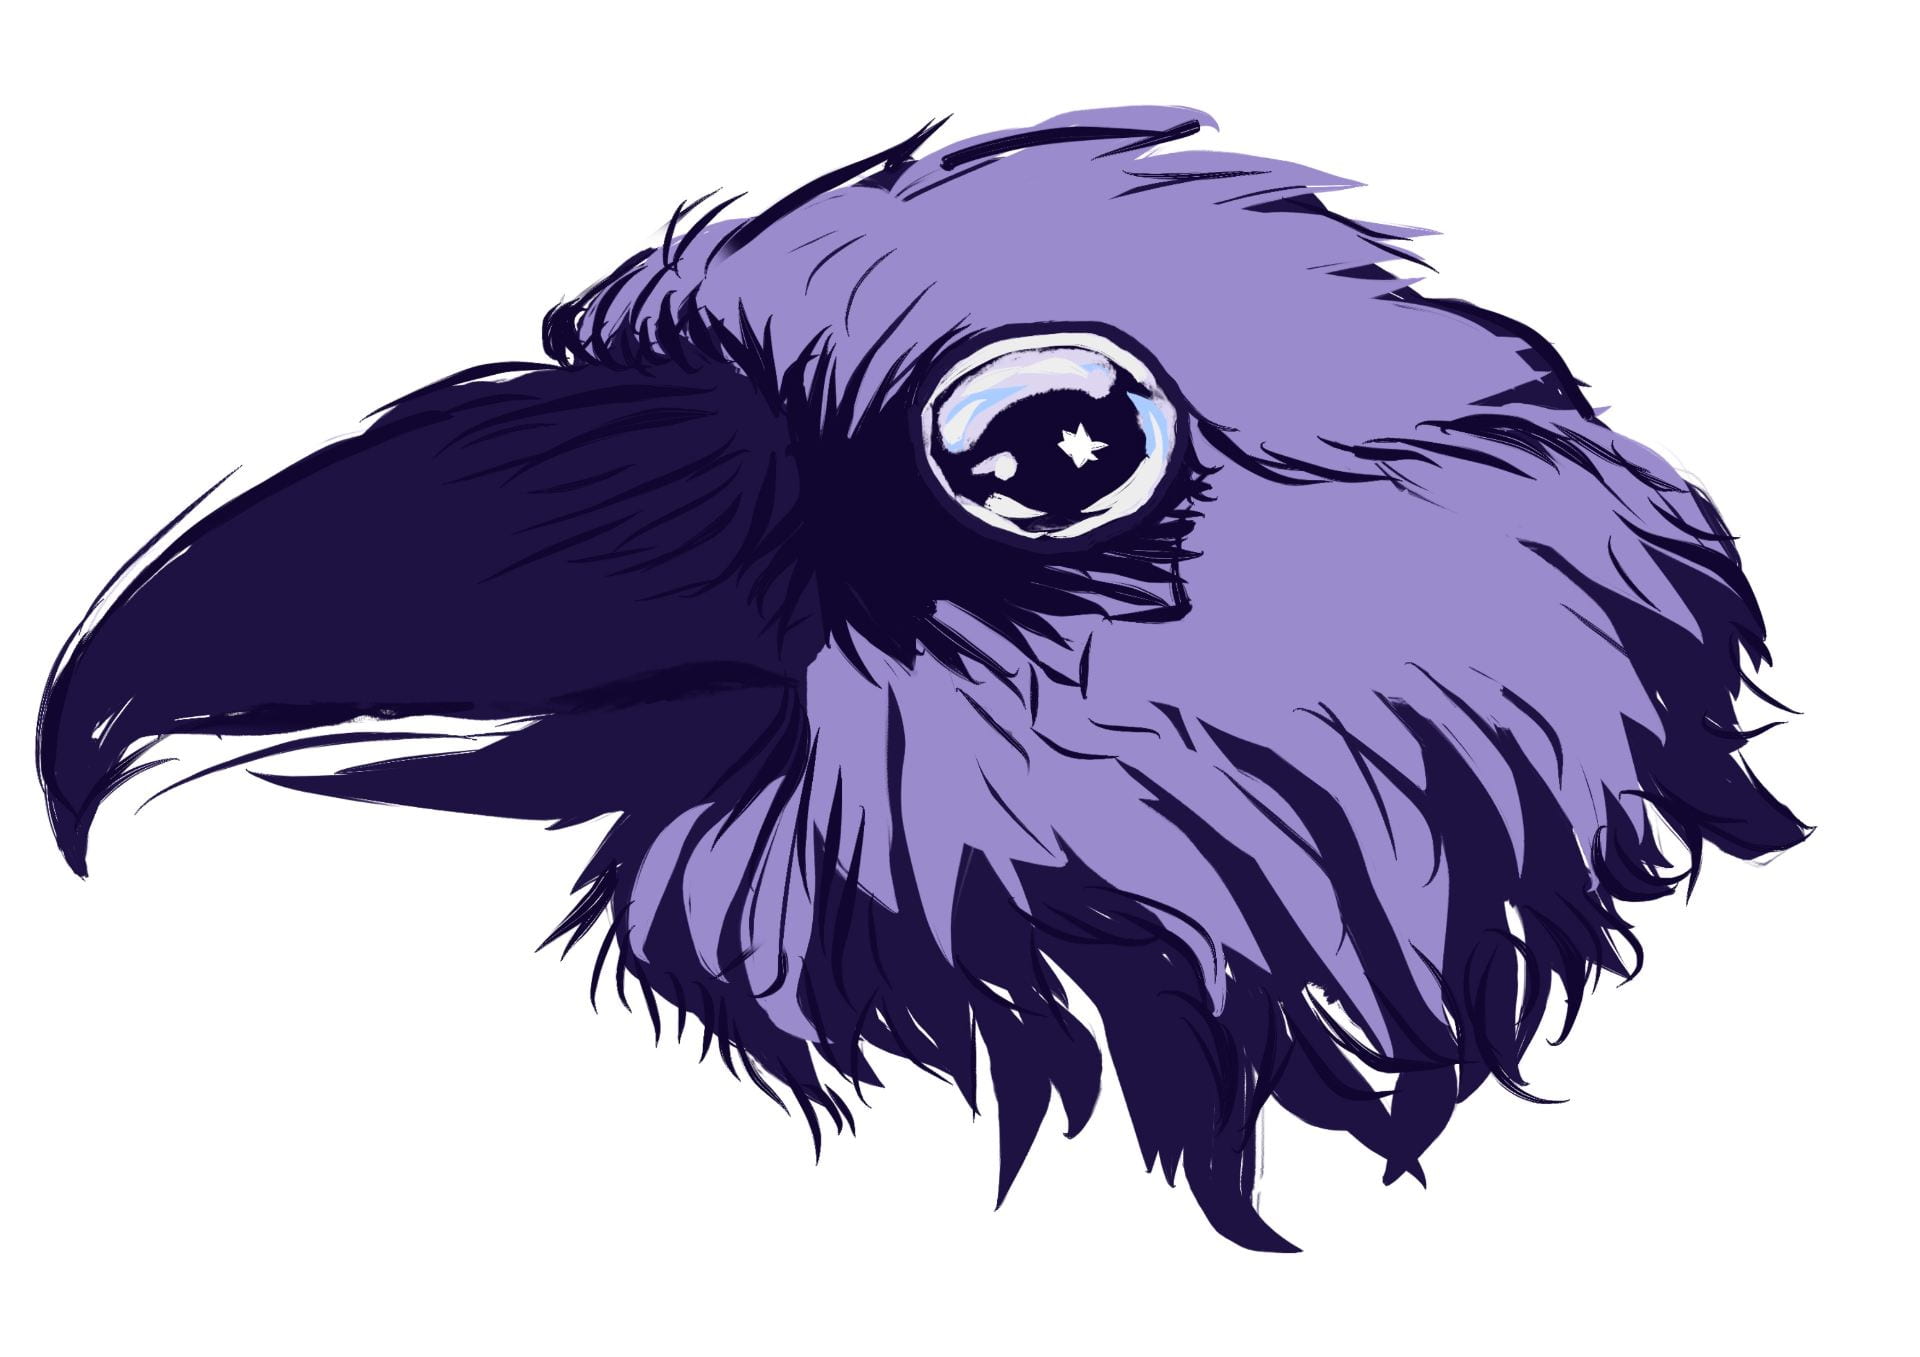 image of a purple eagle